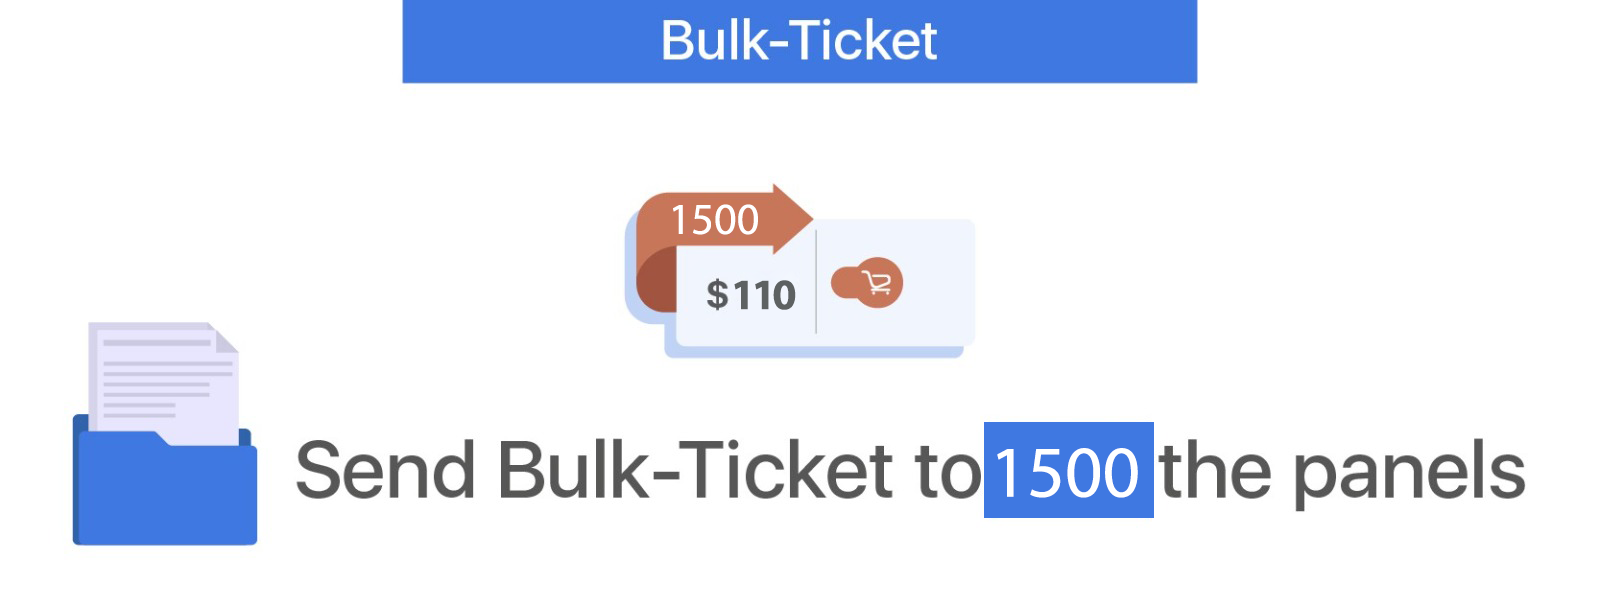 Bulk-Ticket - 1500 Panels